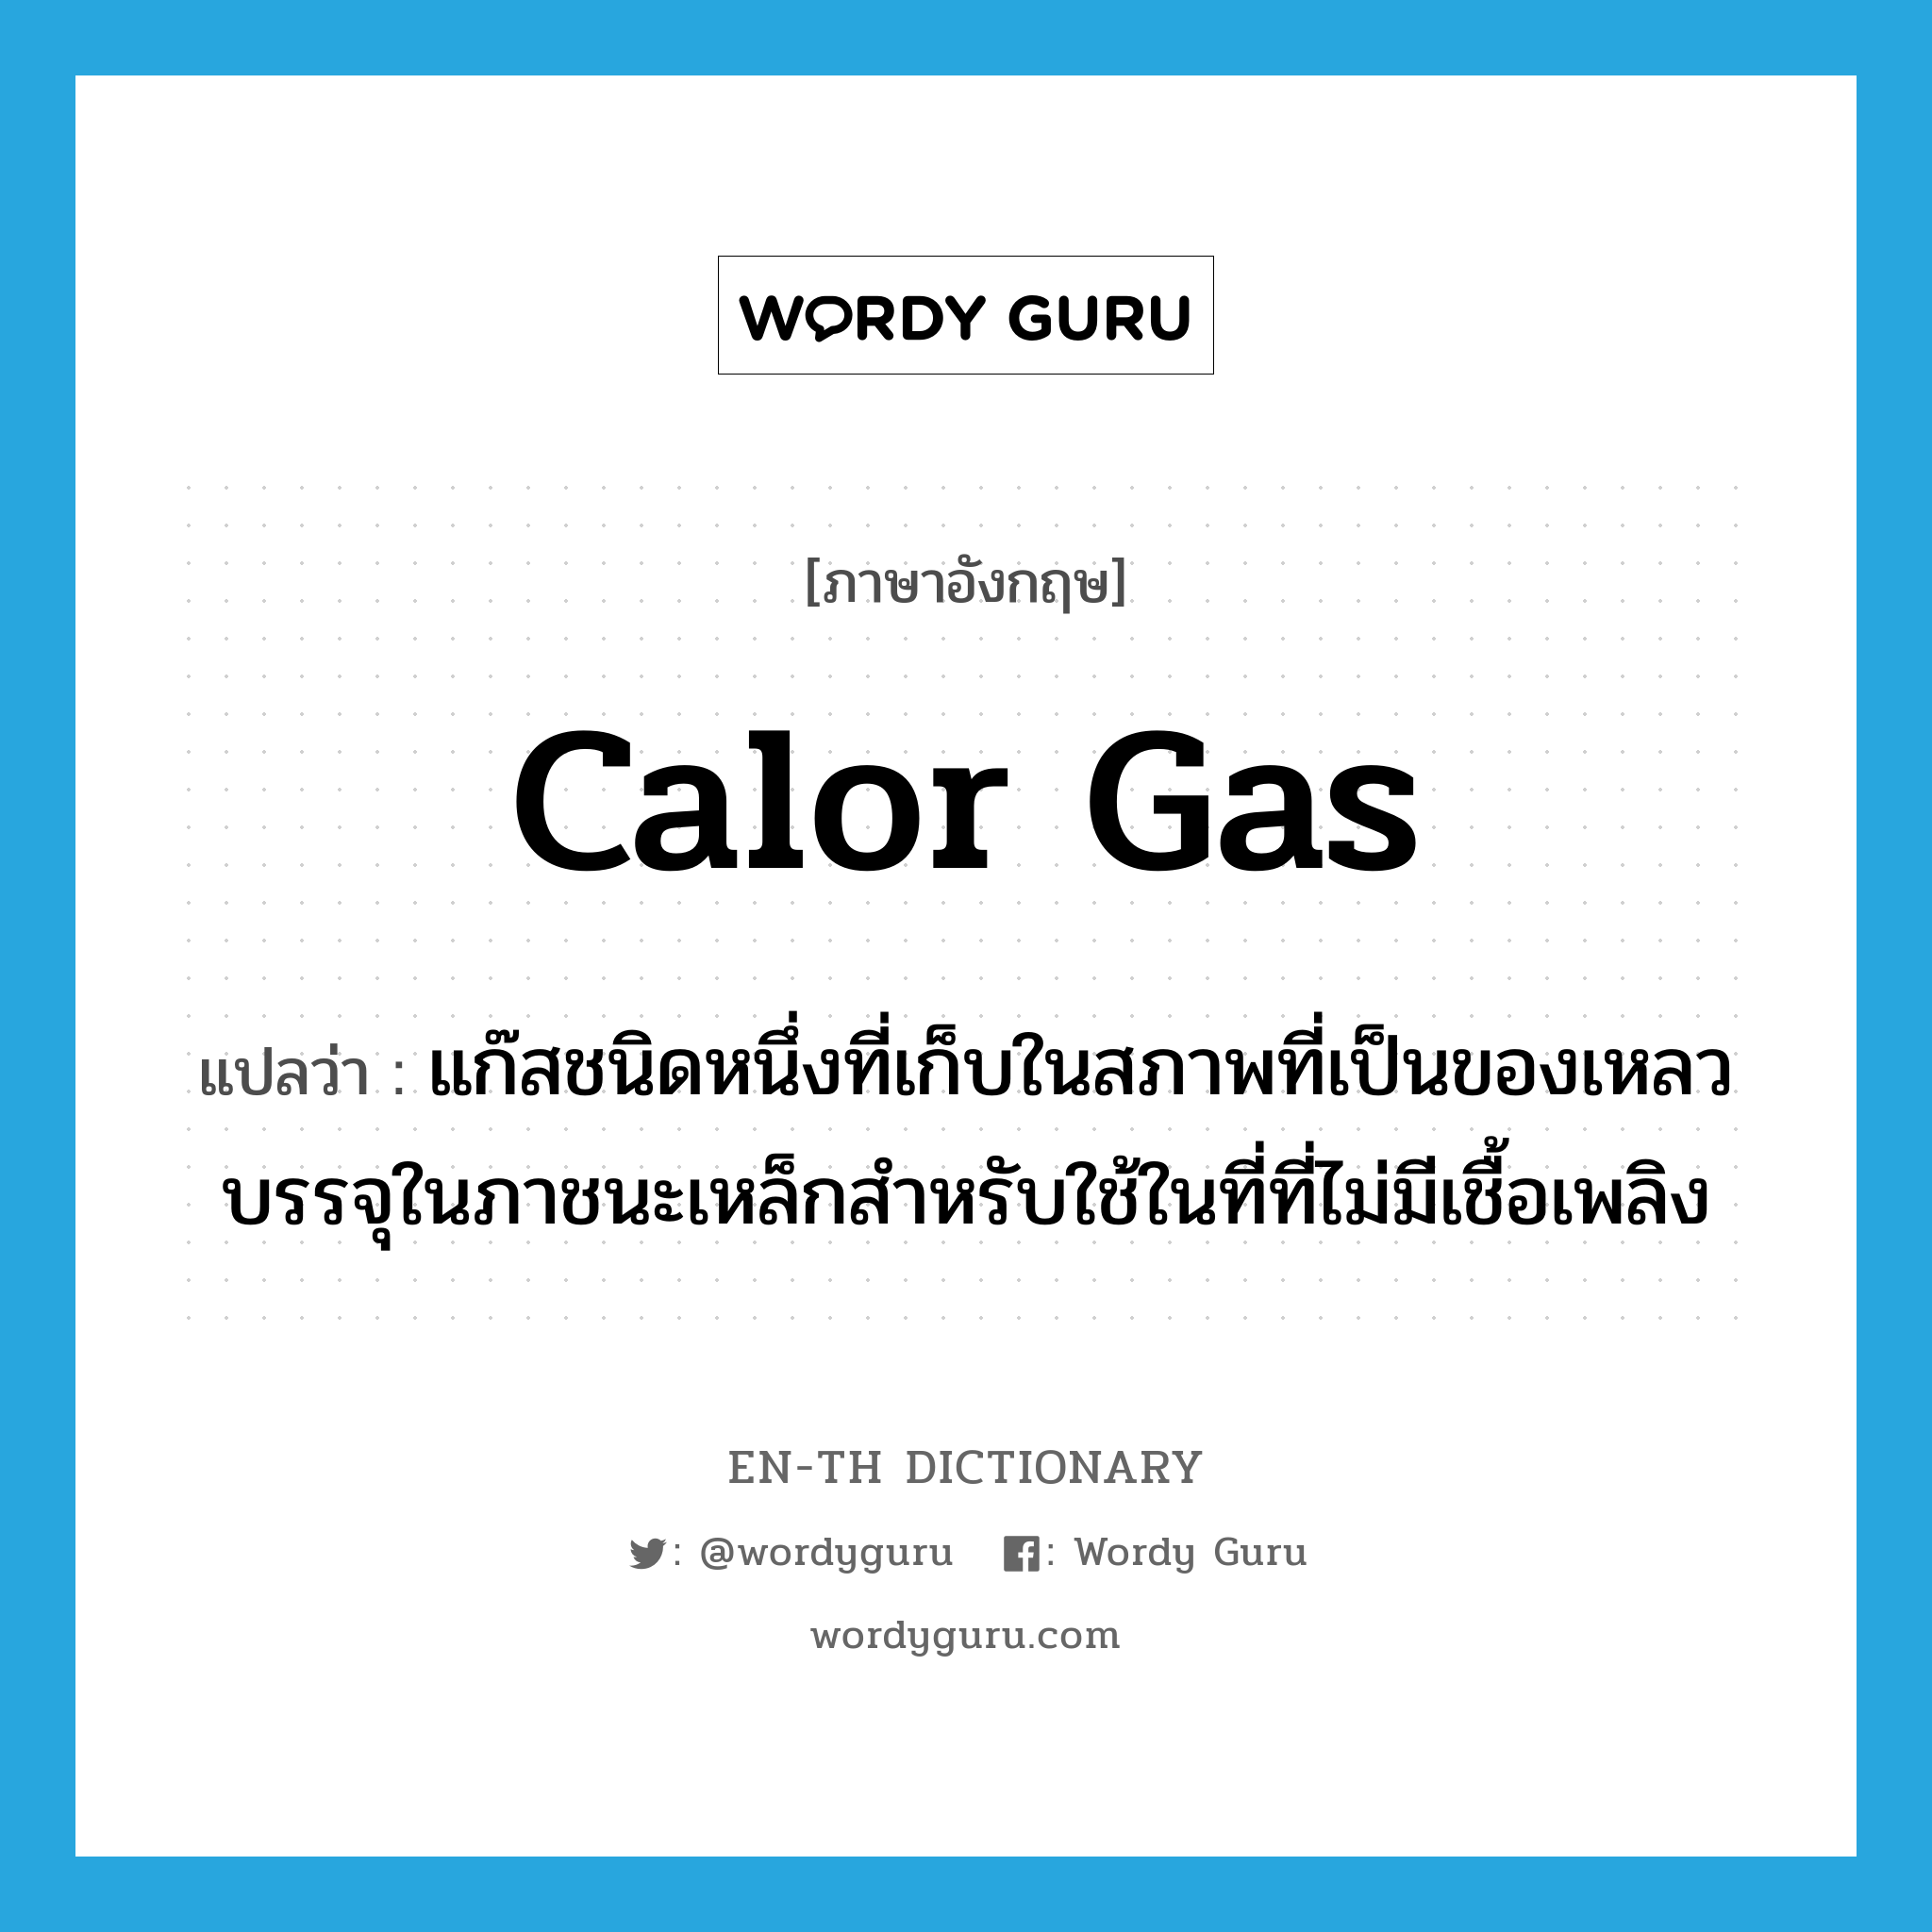 Calor gas แปลว่า?, คำศัพท์ภาษาอังกฤษ Calor gas แปลว่า แก๊สชนิดหนึ่งที่เก็บในสภาพที่เป็นของเหลวบรรจุในภาชนะเหล็กสำหรับใช้ในที่ที่ไม่มีเชื้อเพลิง ประเภท N หมวด N